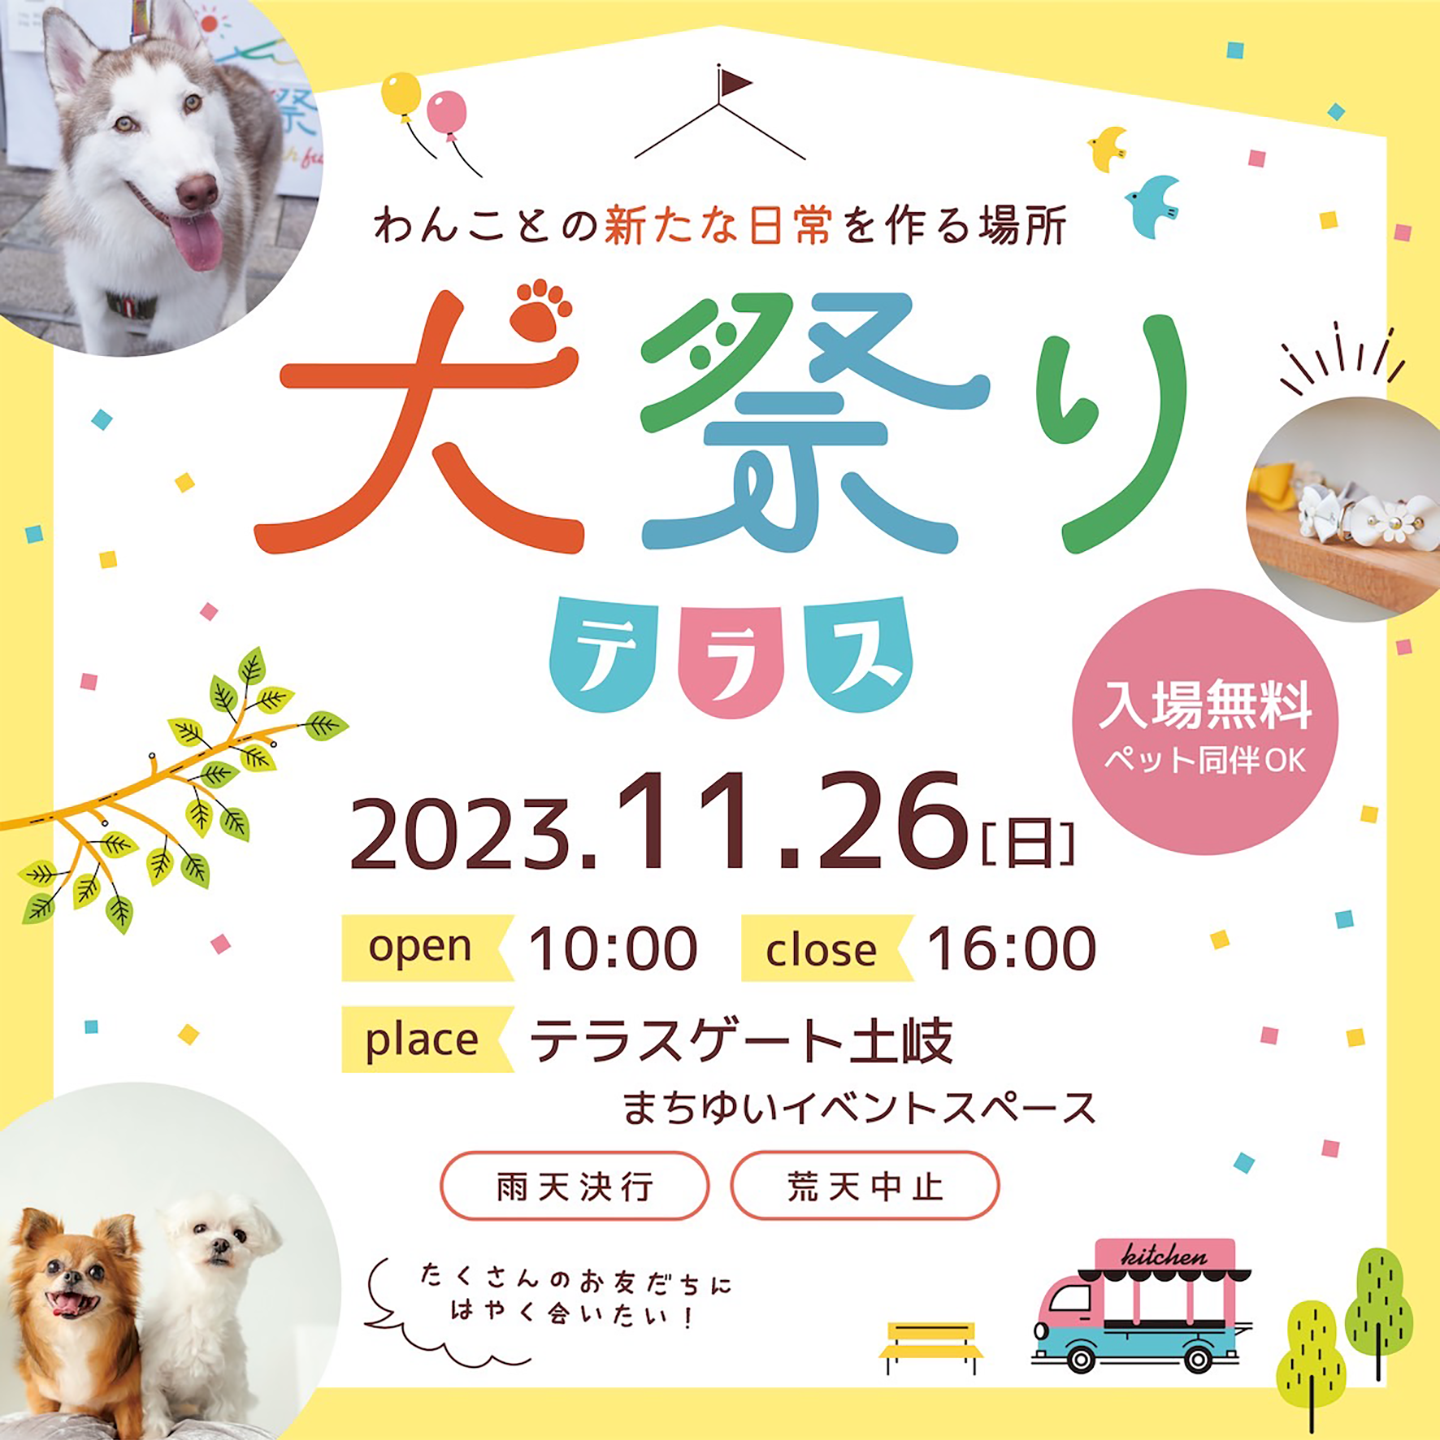 【イベント出店】2023/11/26犬祭りテラス(岐阜県土岐市)と11月の営業日カレンダー